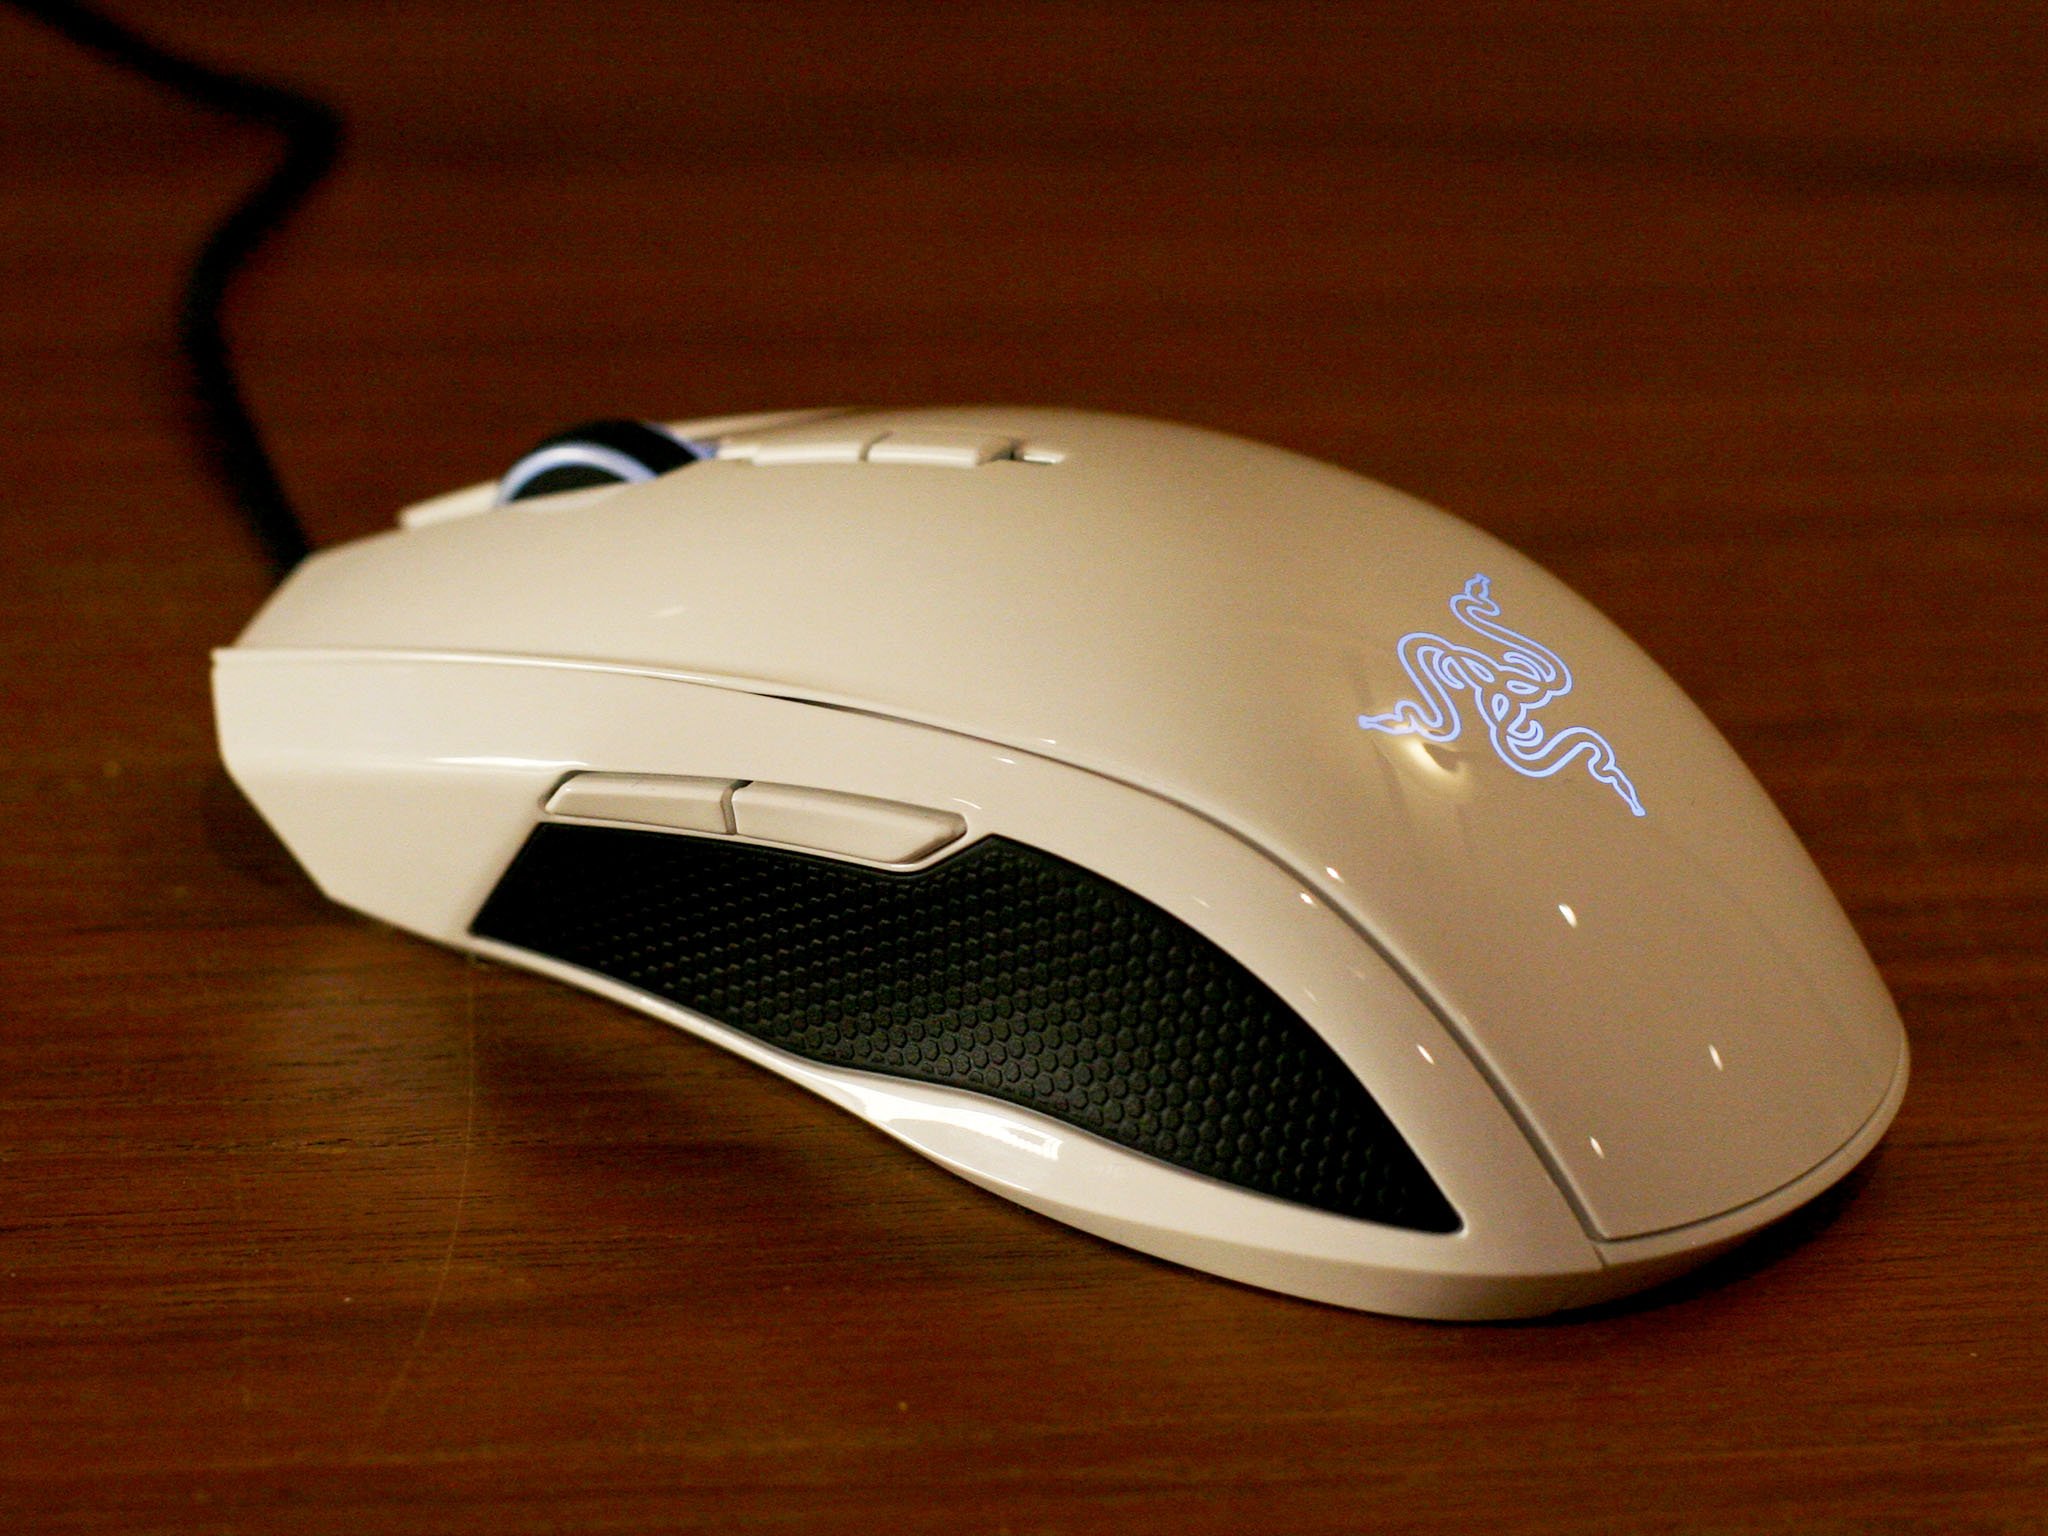 Razer Taipan gaming mouse